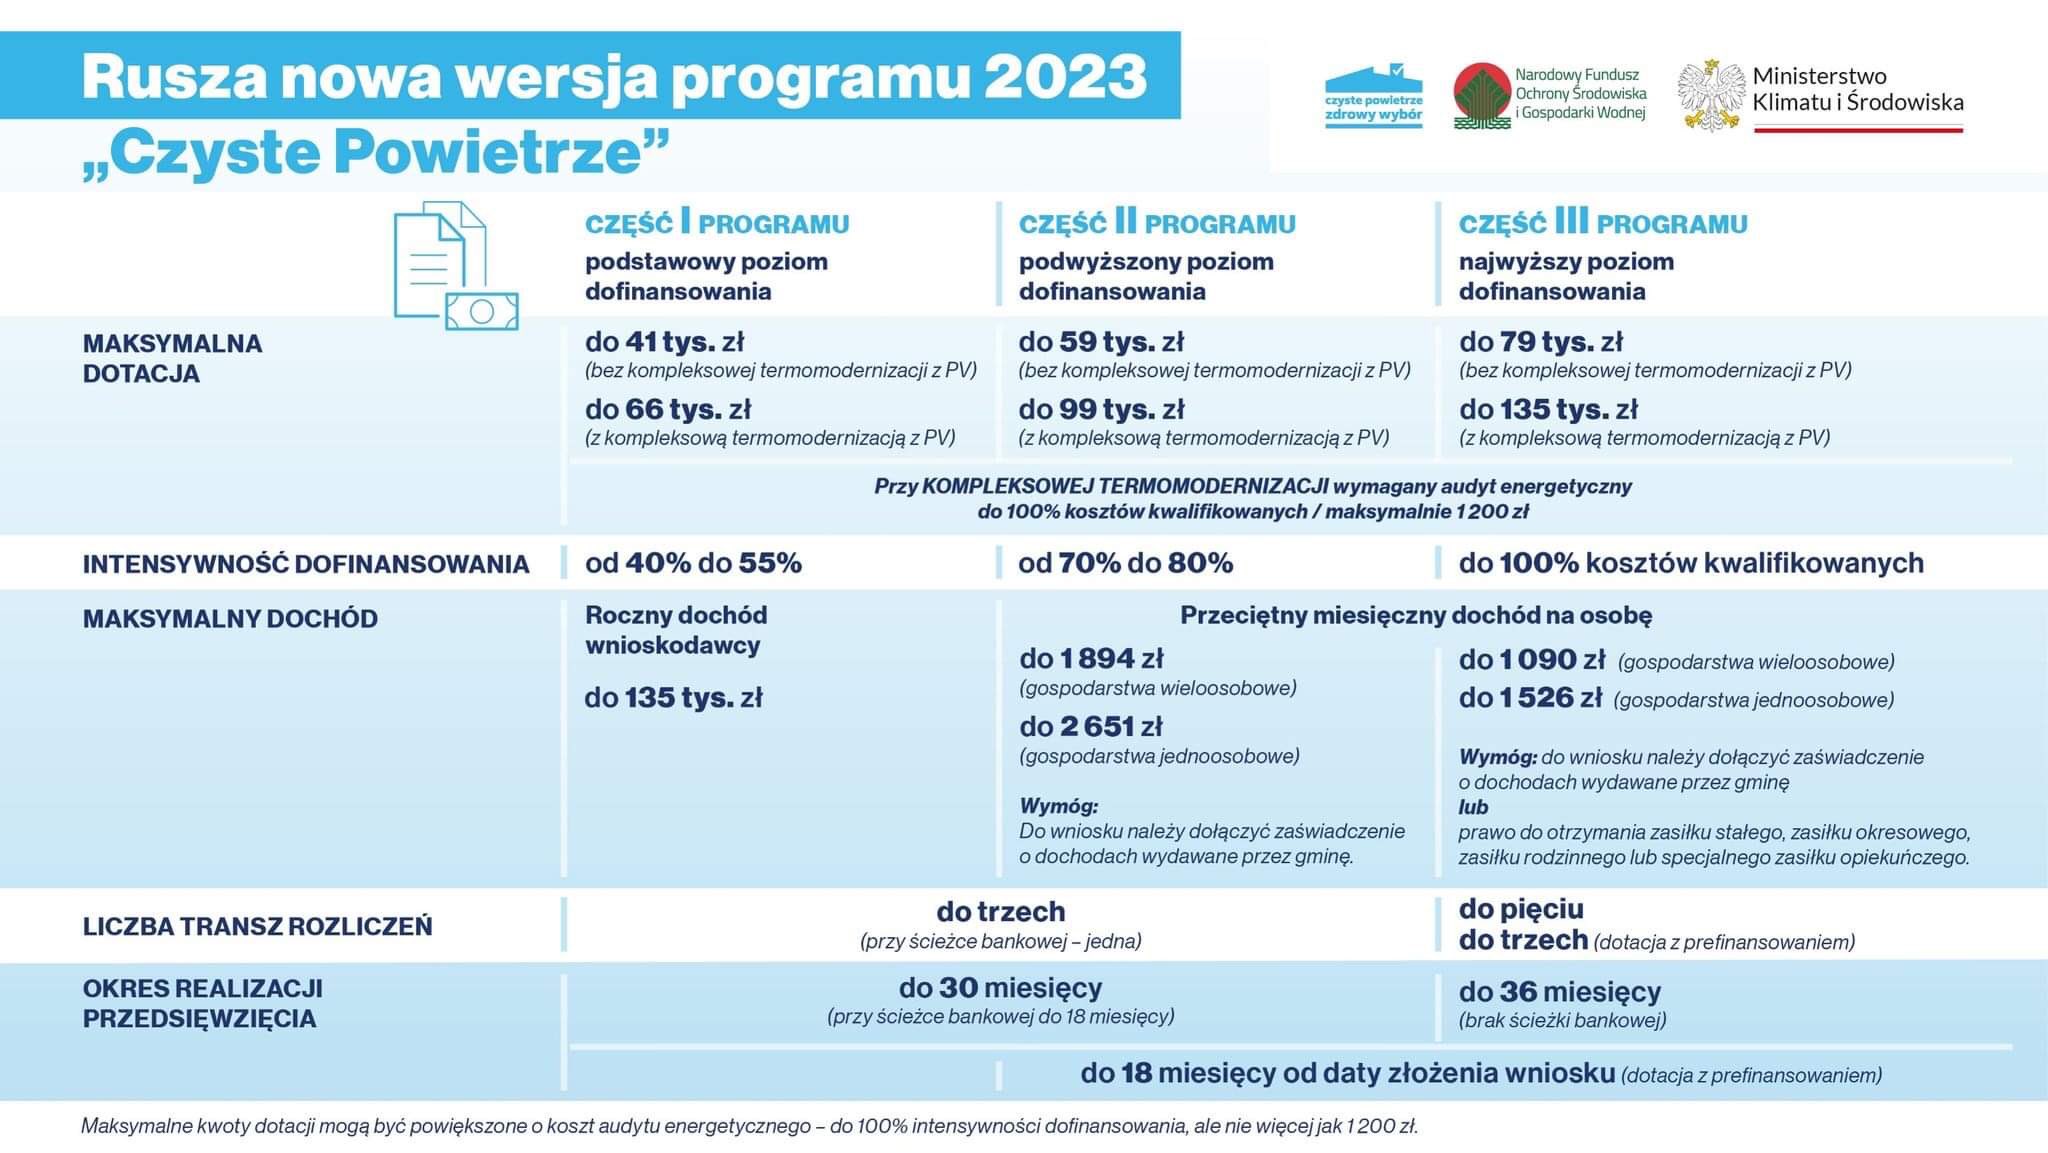 ulotka: Rusza nowa wersja programu 2023 "Czyste Powietrze"